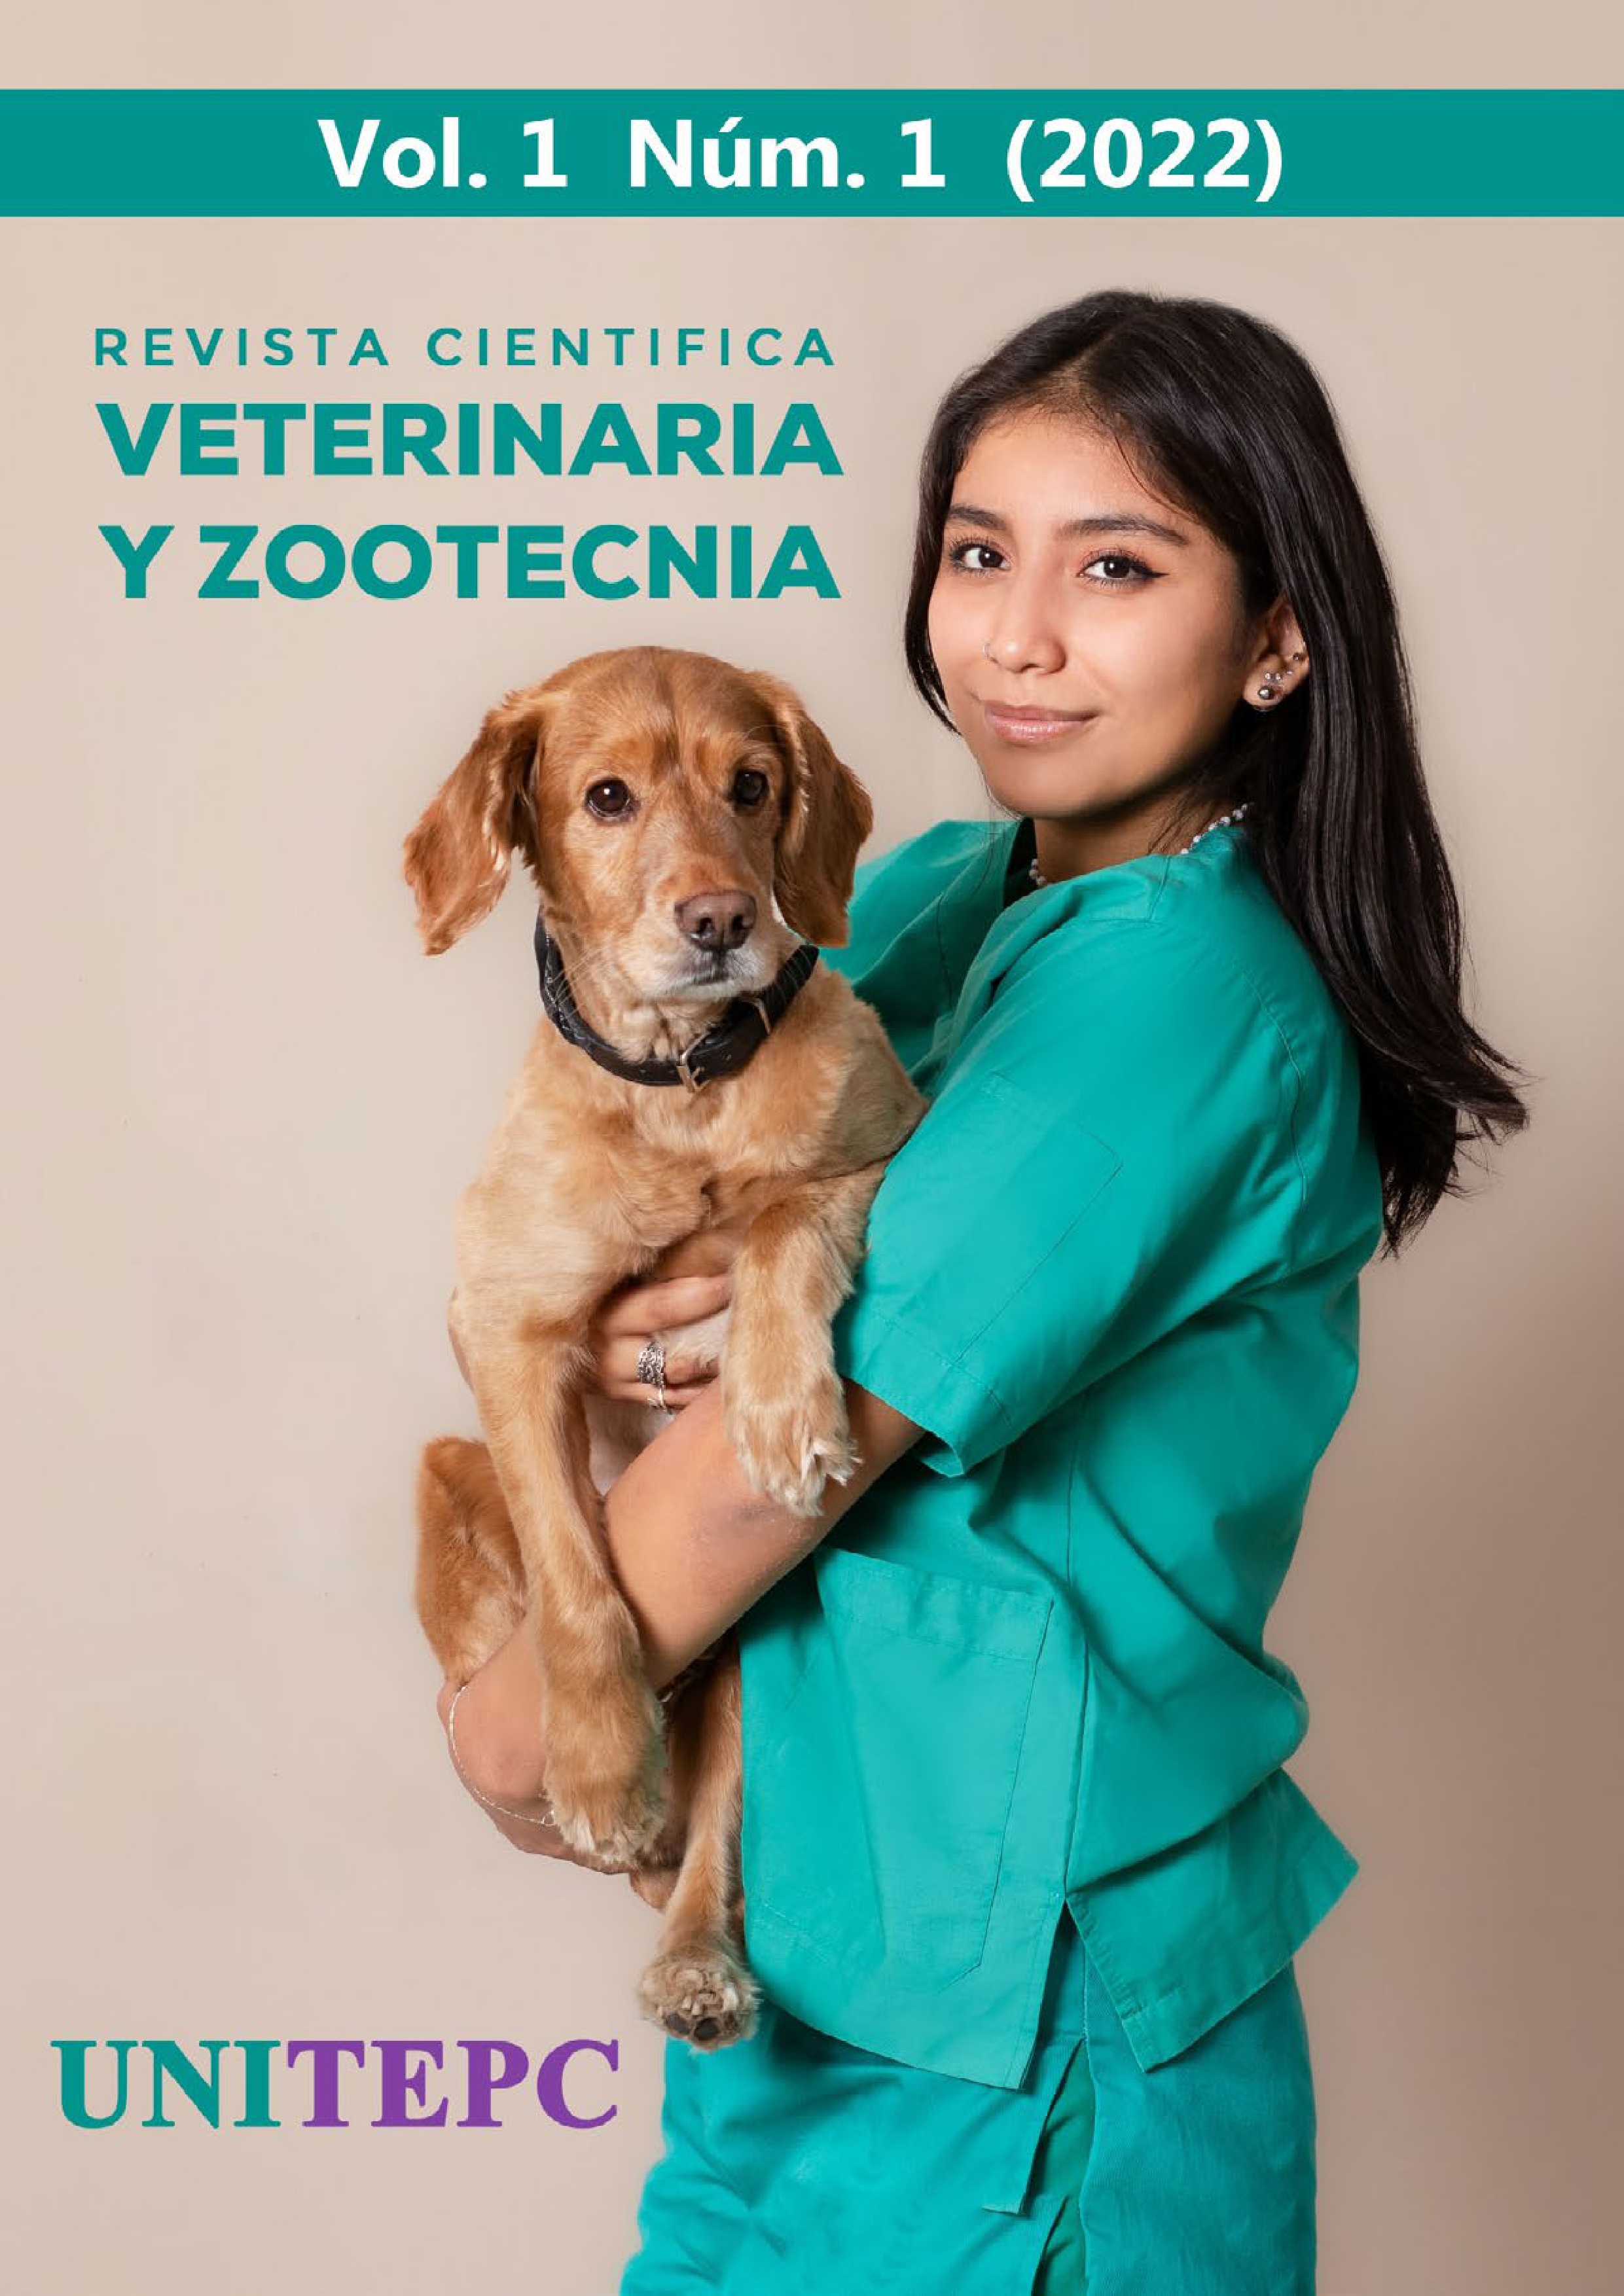 					Ver Vol. 1 Núm. 1 (2022): Revista Científica de Veterinaria y Zootecnia UNITEPC
				